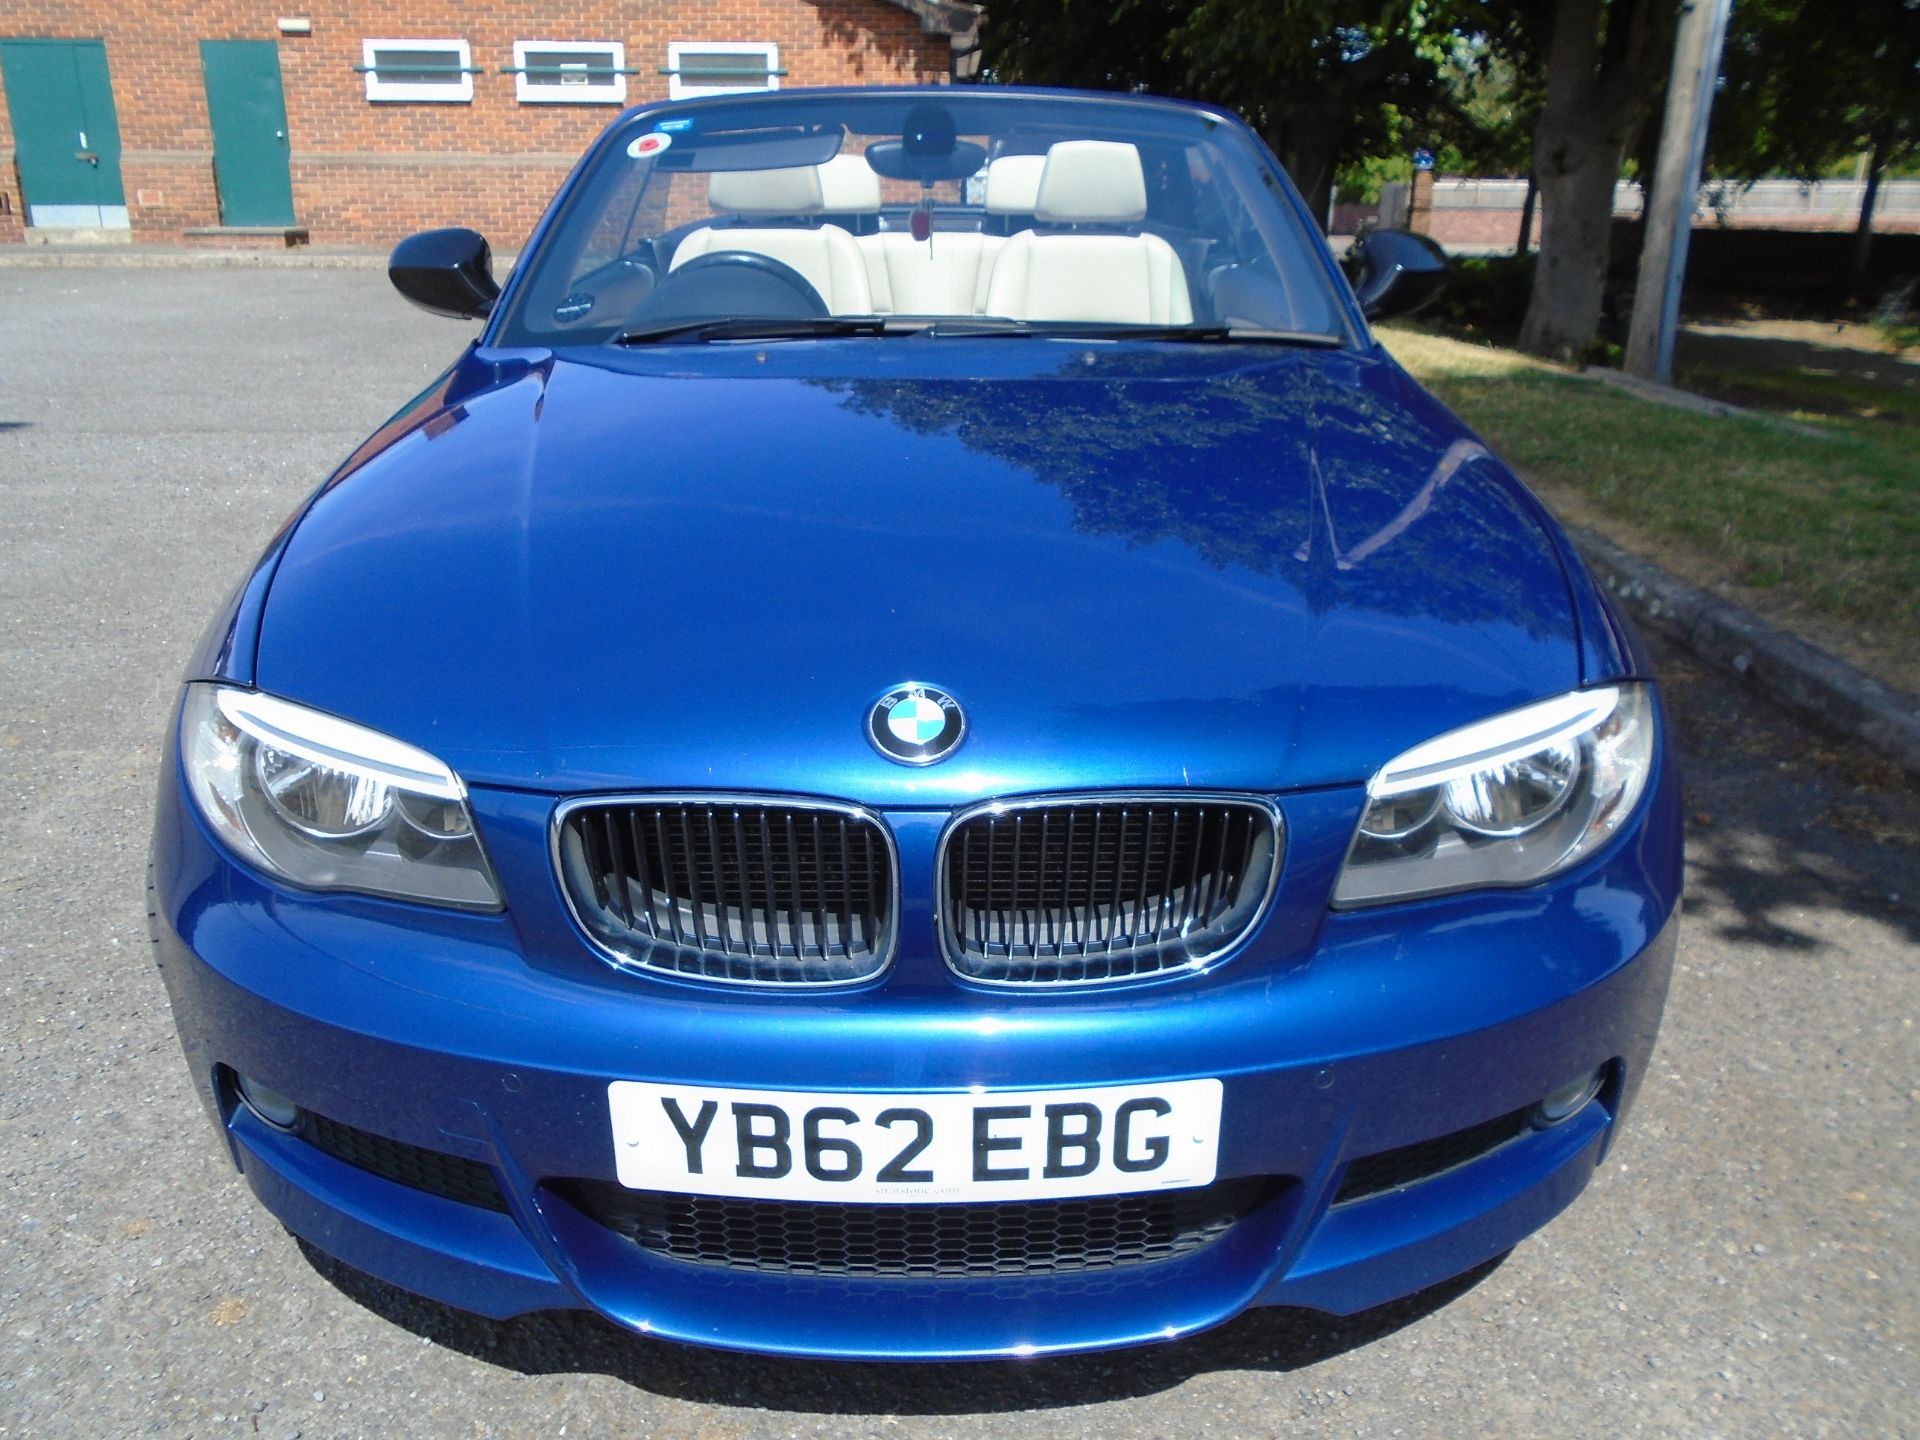 2012/62 REG BMW 120D SPORT PLUS EDITION 2.0 DIESEL BLUE CONVERTIBLE *NO VAT* - Image 5 of 8